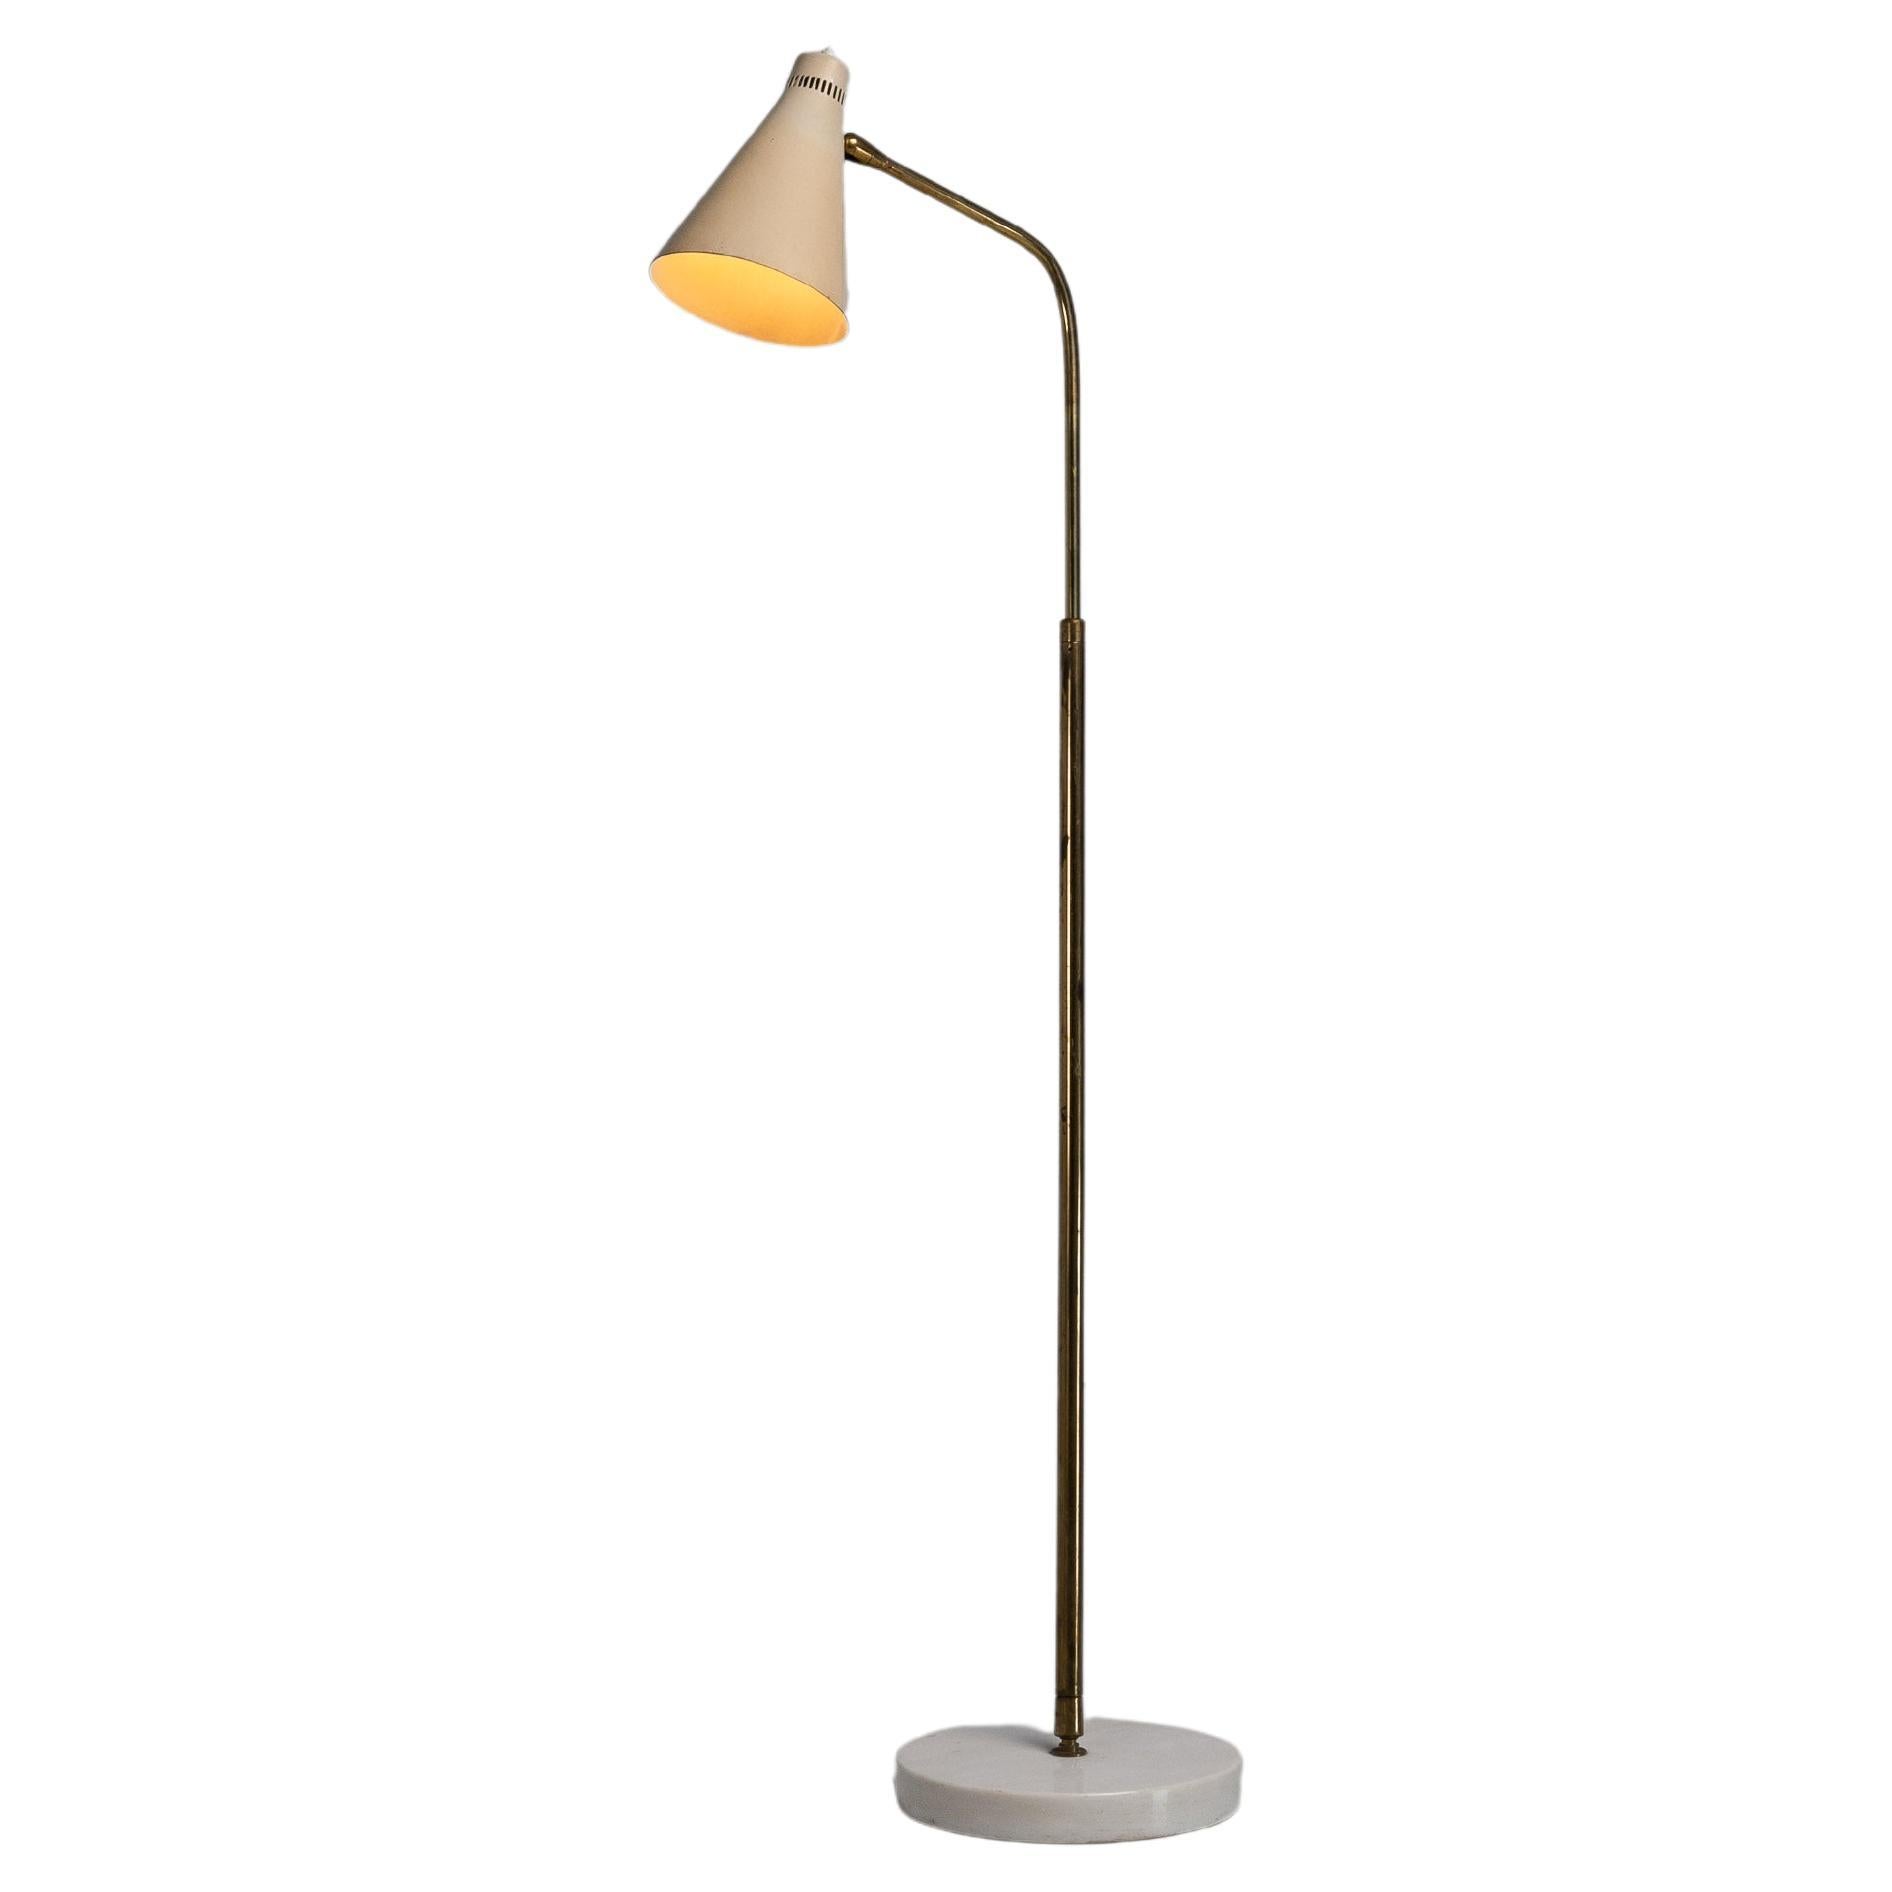 Giuseppe Ostuni model 301M floor lamp Oluce Italy 1953 For Sale